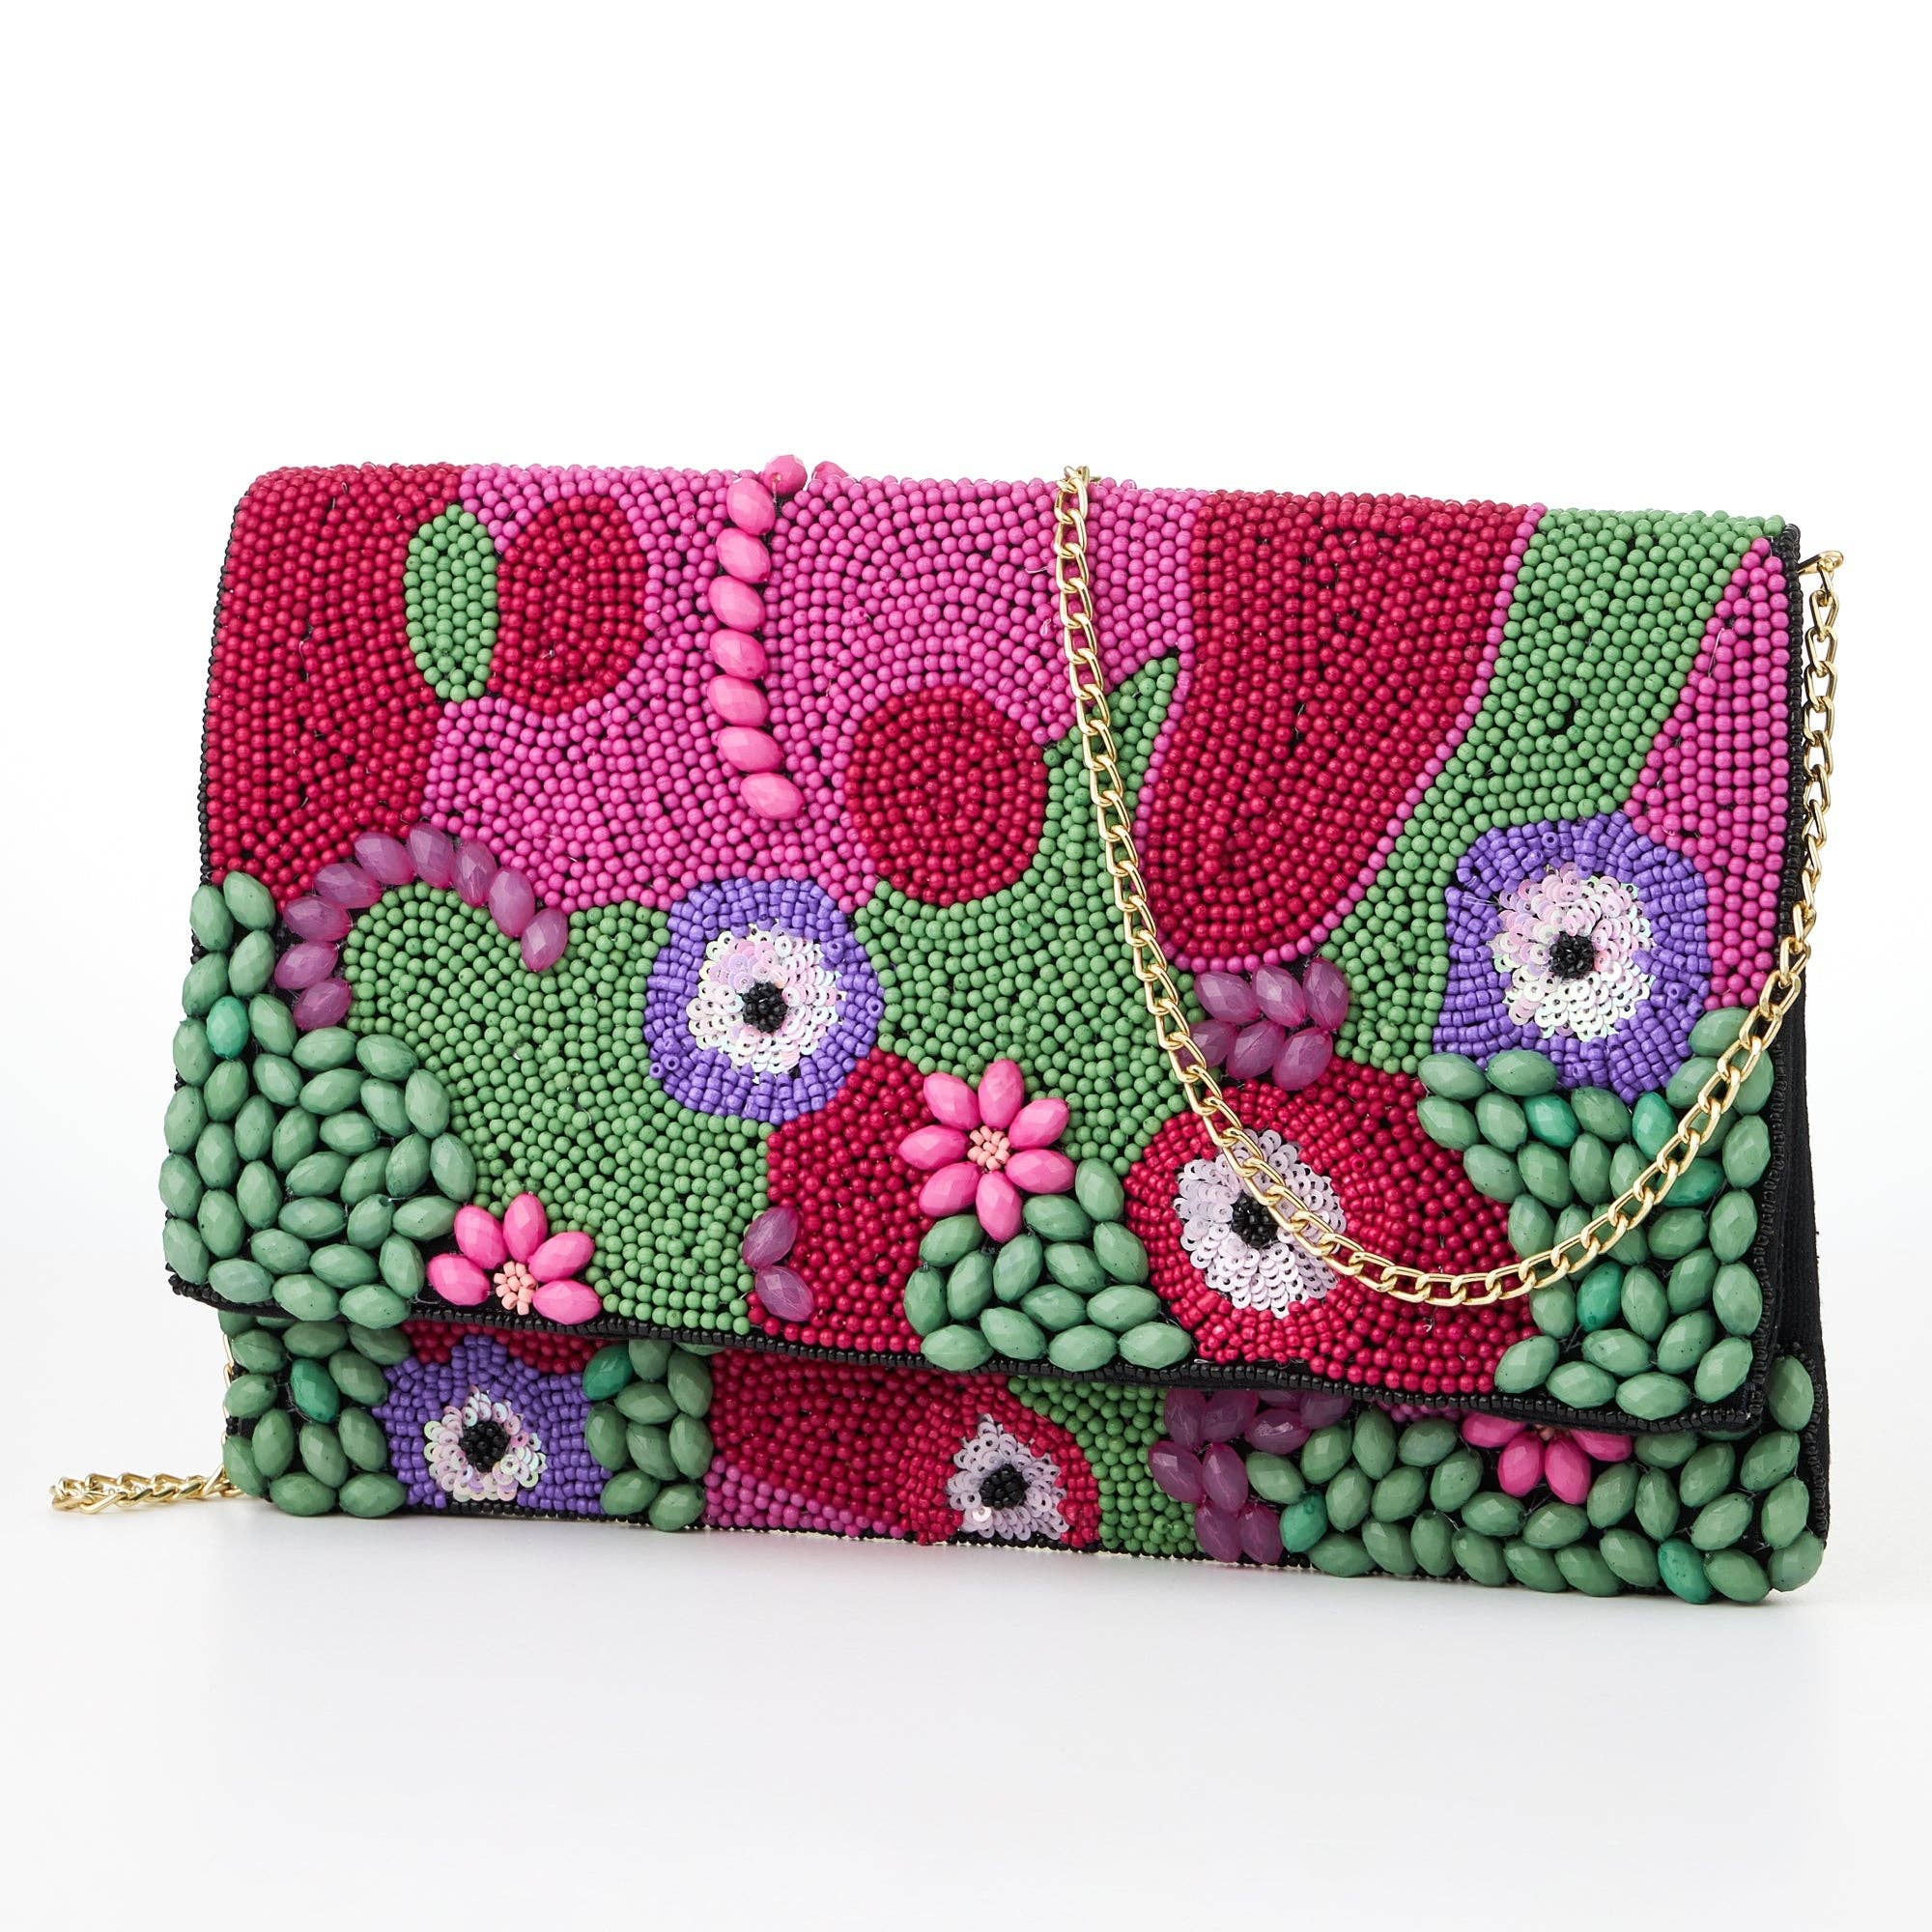 3D Multi-Color Floral Beads Clutch Bag